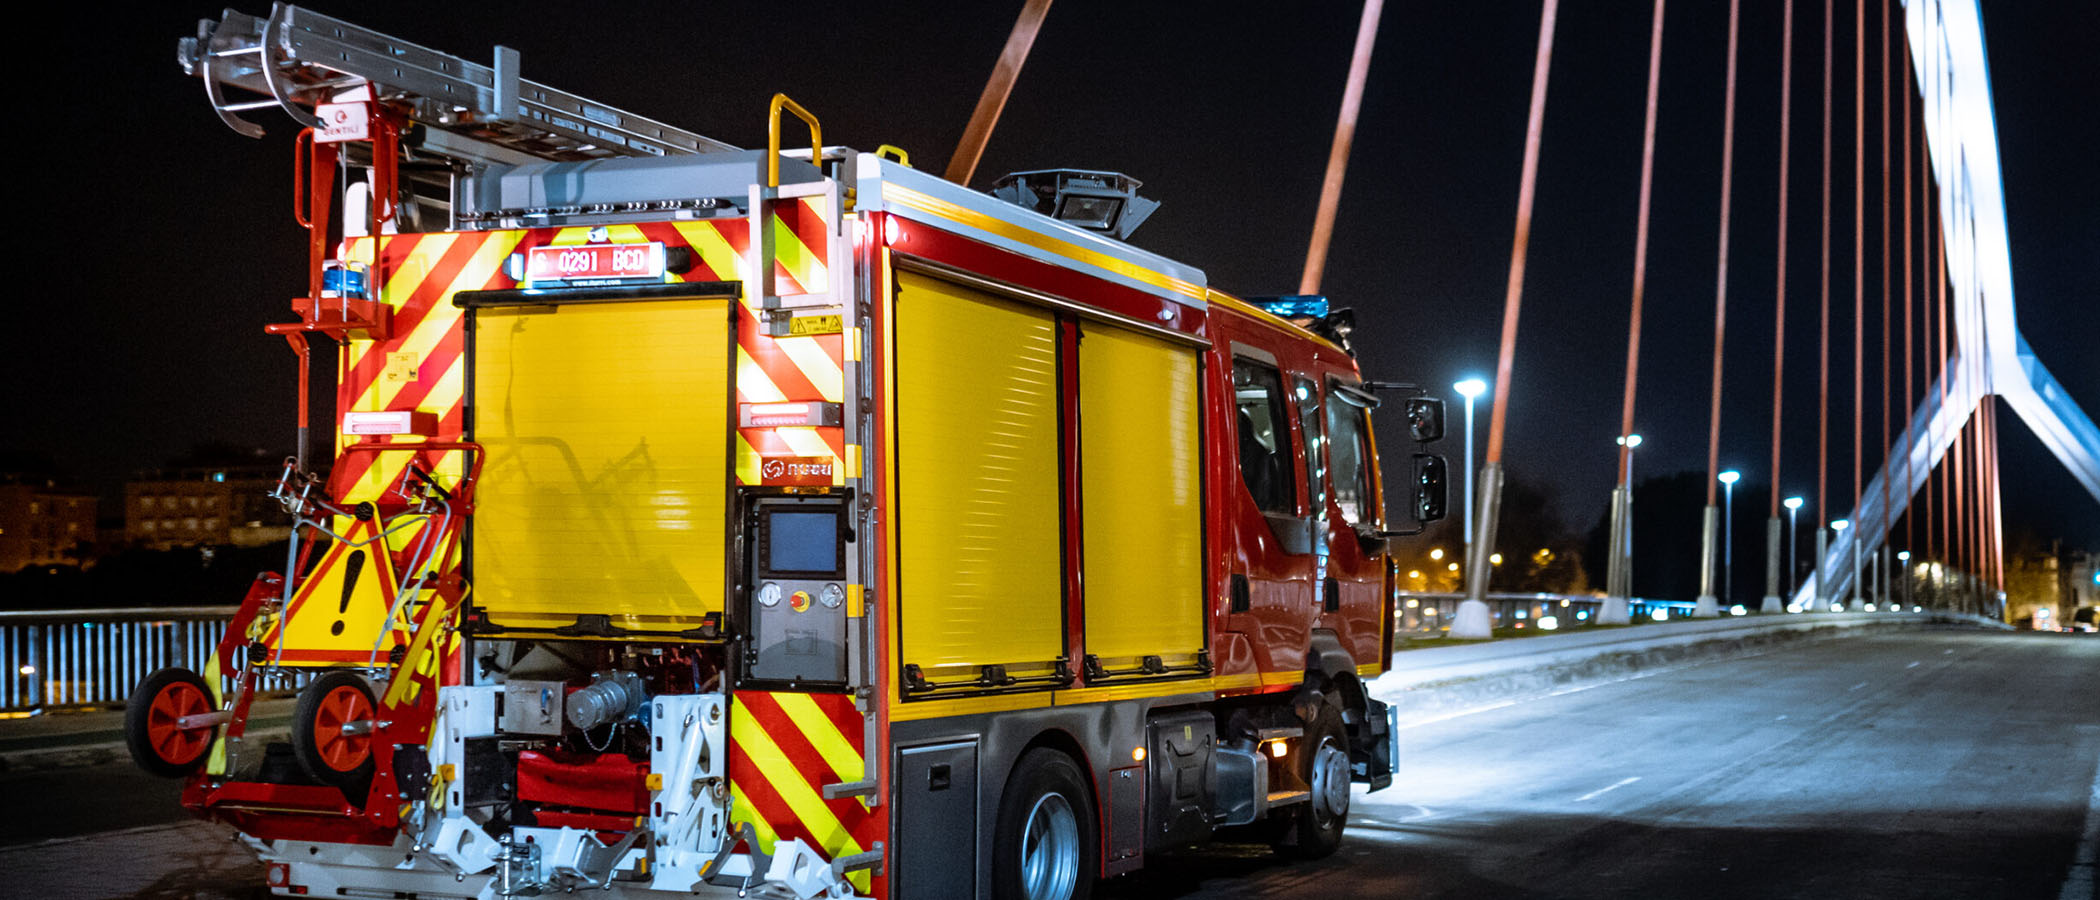 Ein rotes ITURRI Feuerwehrauto, welches bei Nacht über eine Brücke fährt